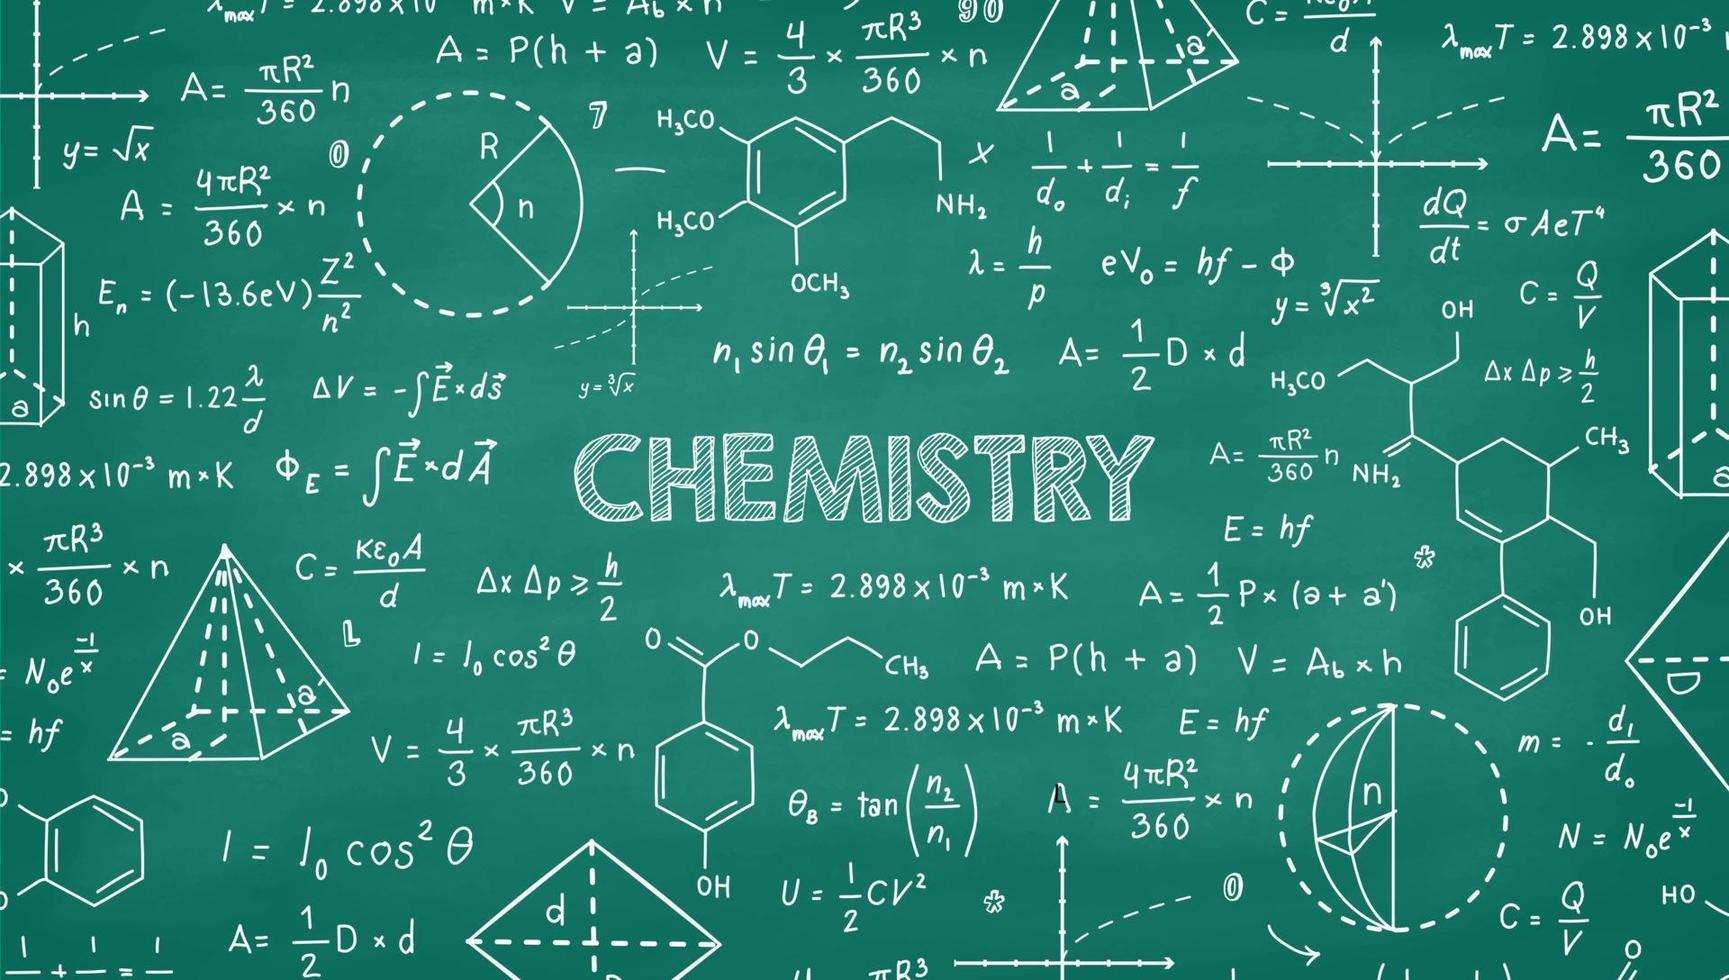 vetenskaplig och kemi formler och algebra illustration på grön svarta tavlan vektor